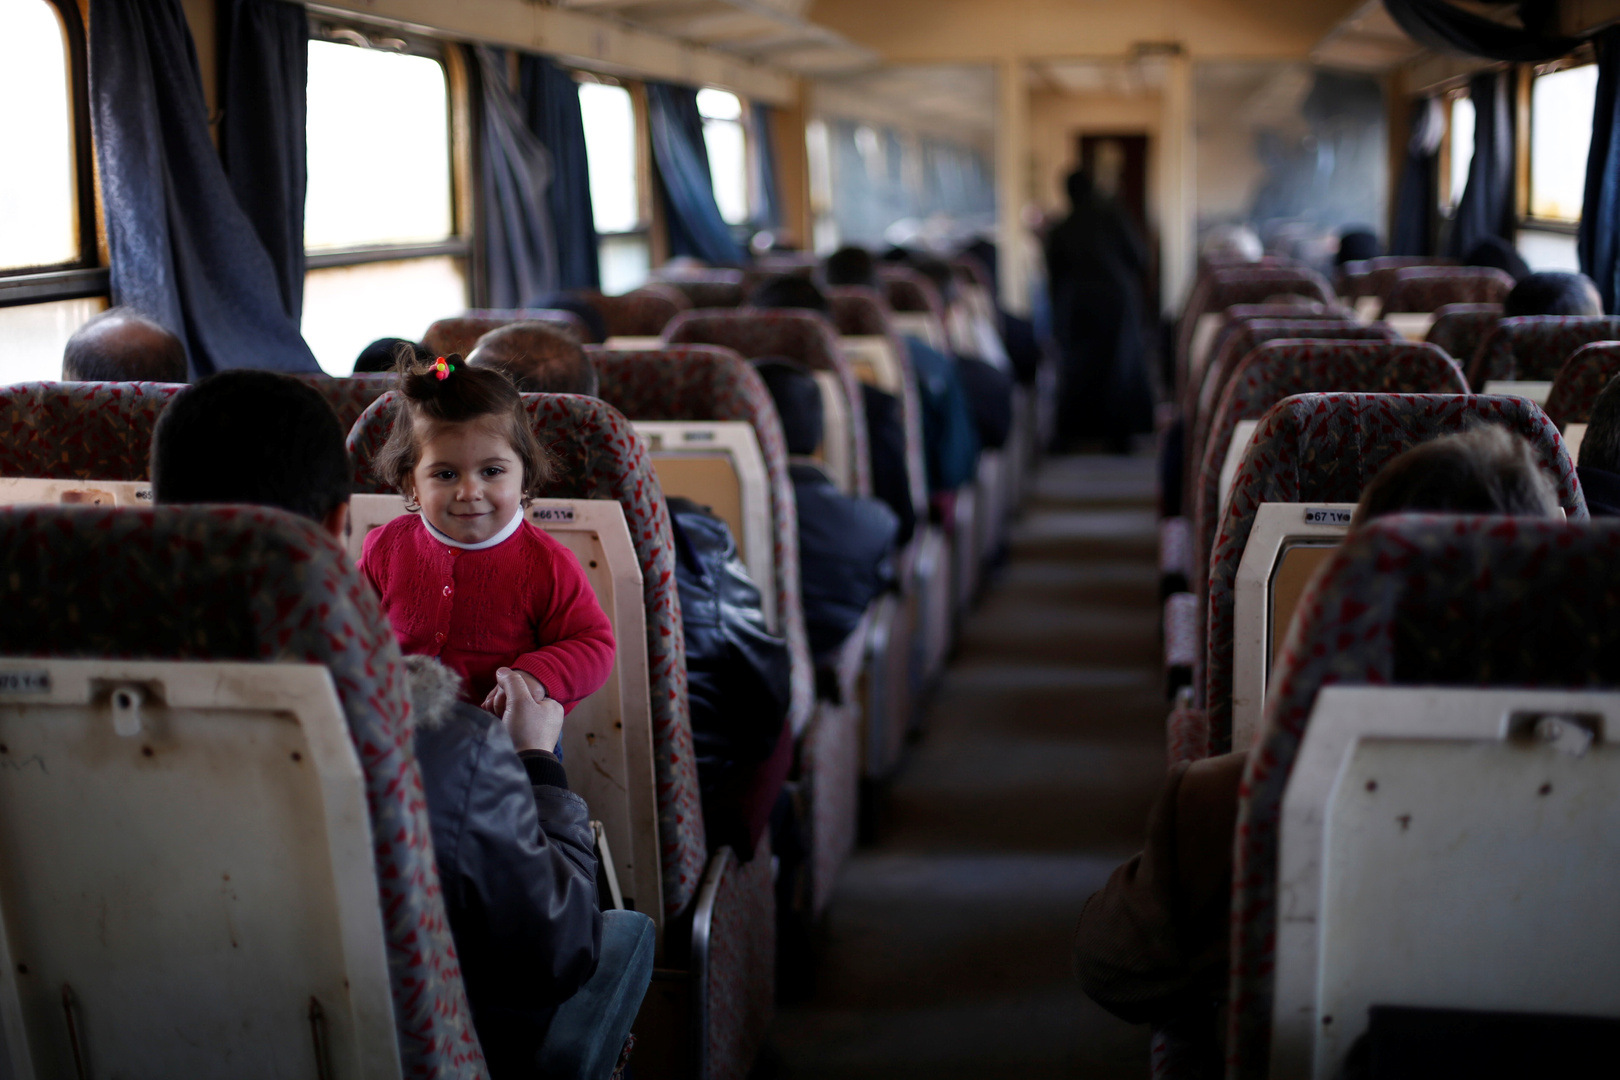 سوريا.. العثور على جثتي طفلين على سكة قطار في حلب